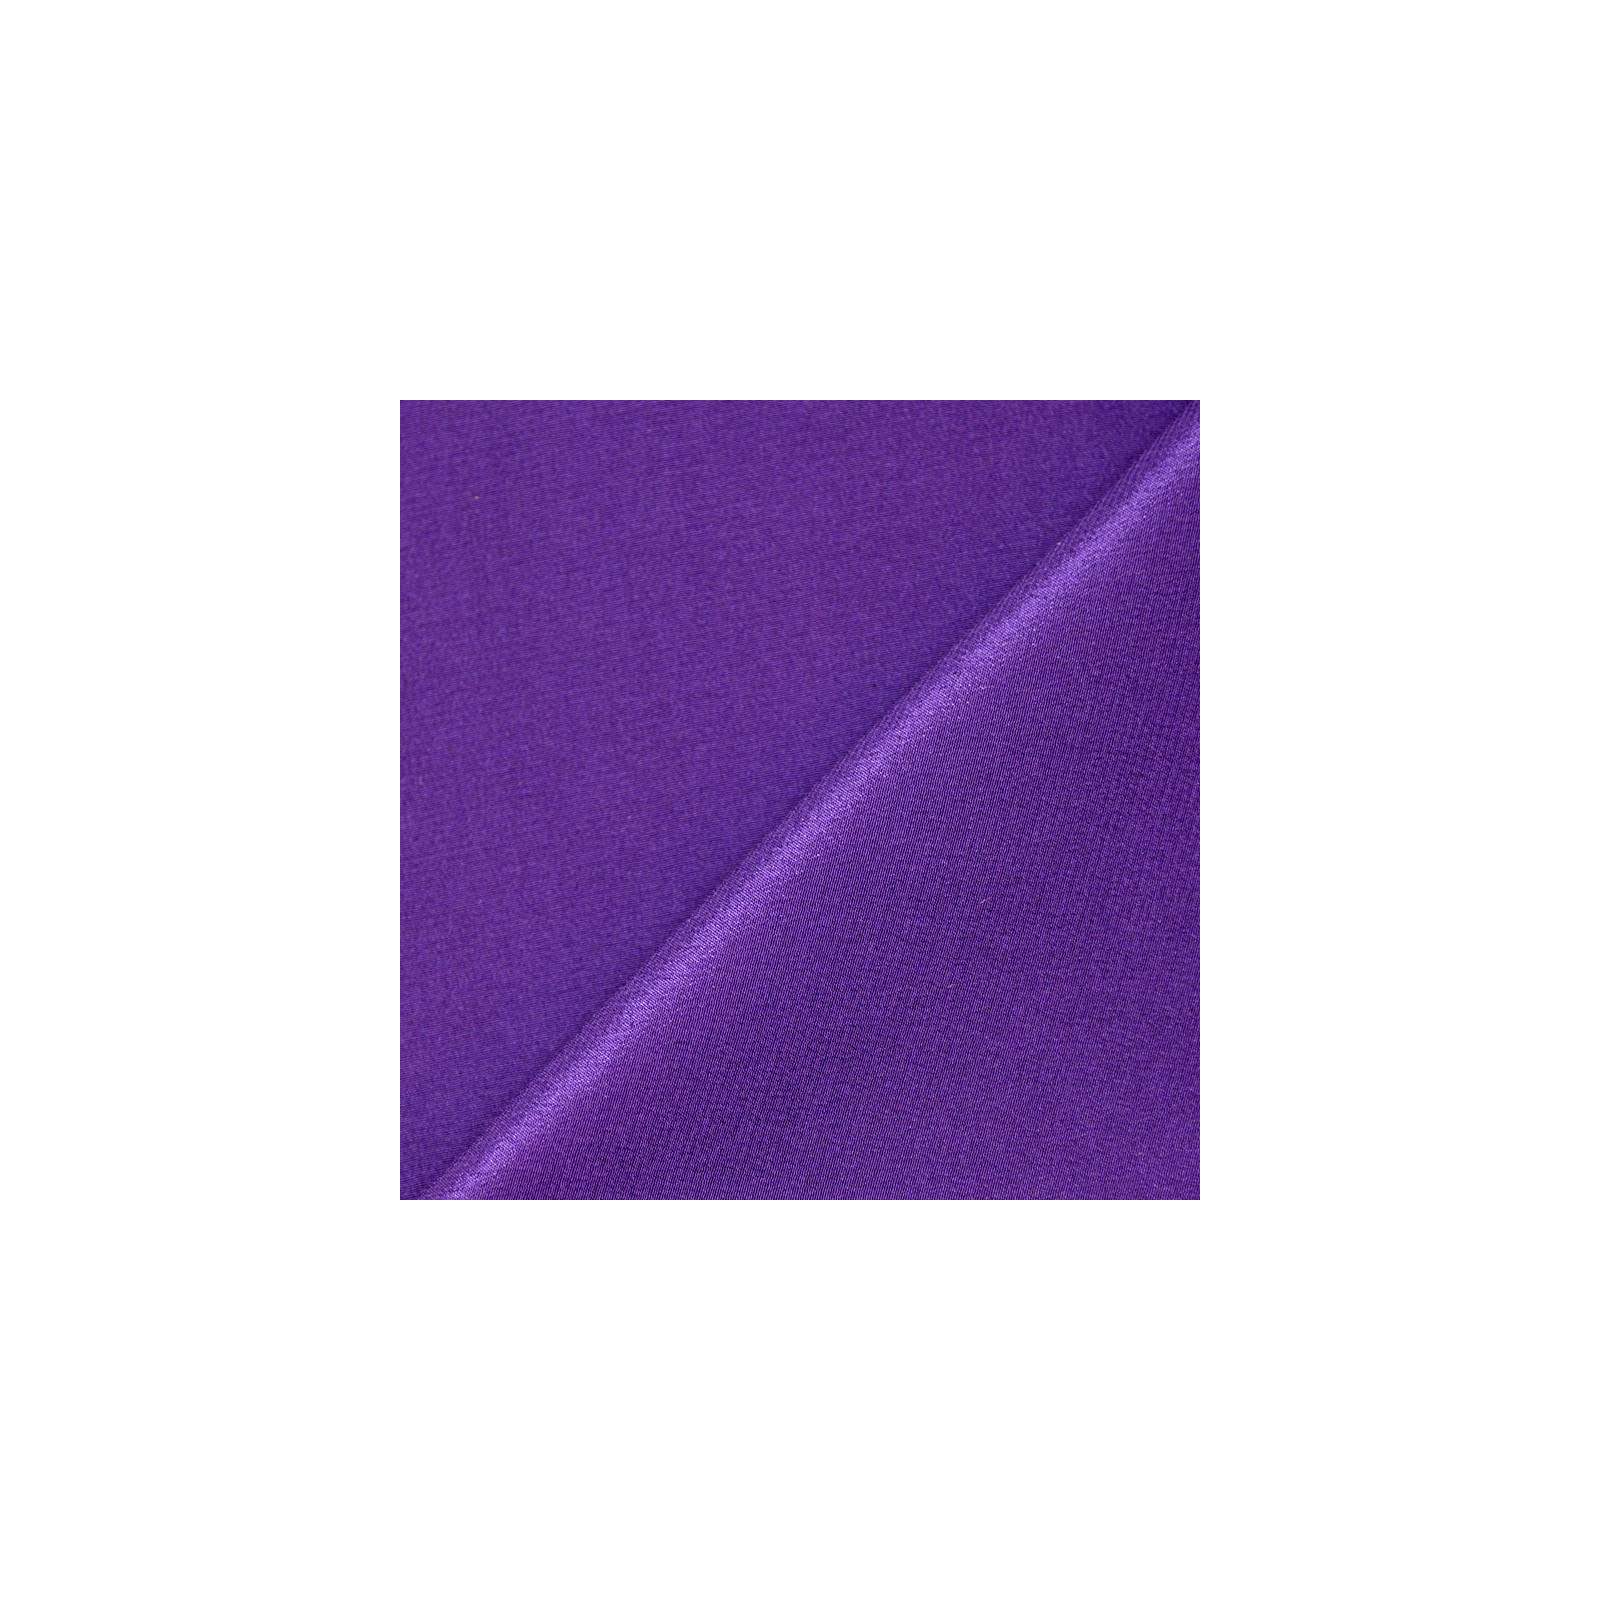 Crêpe de chine 100% soie violet